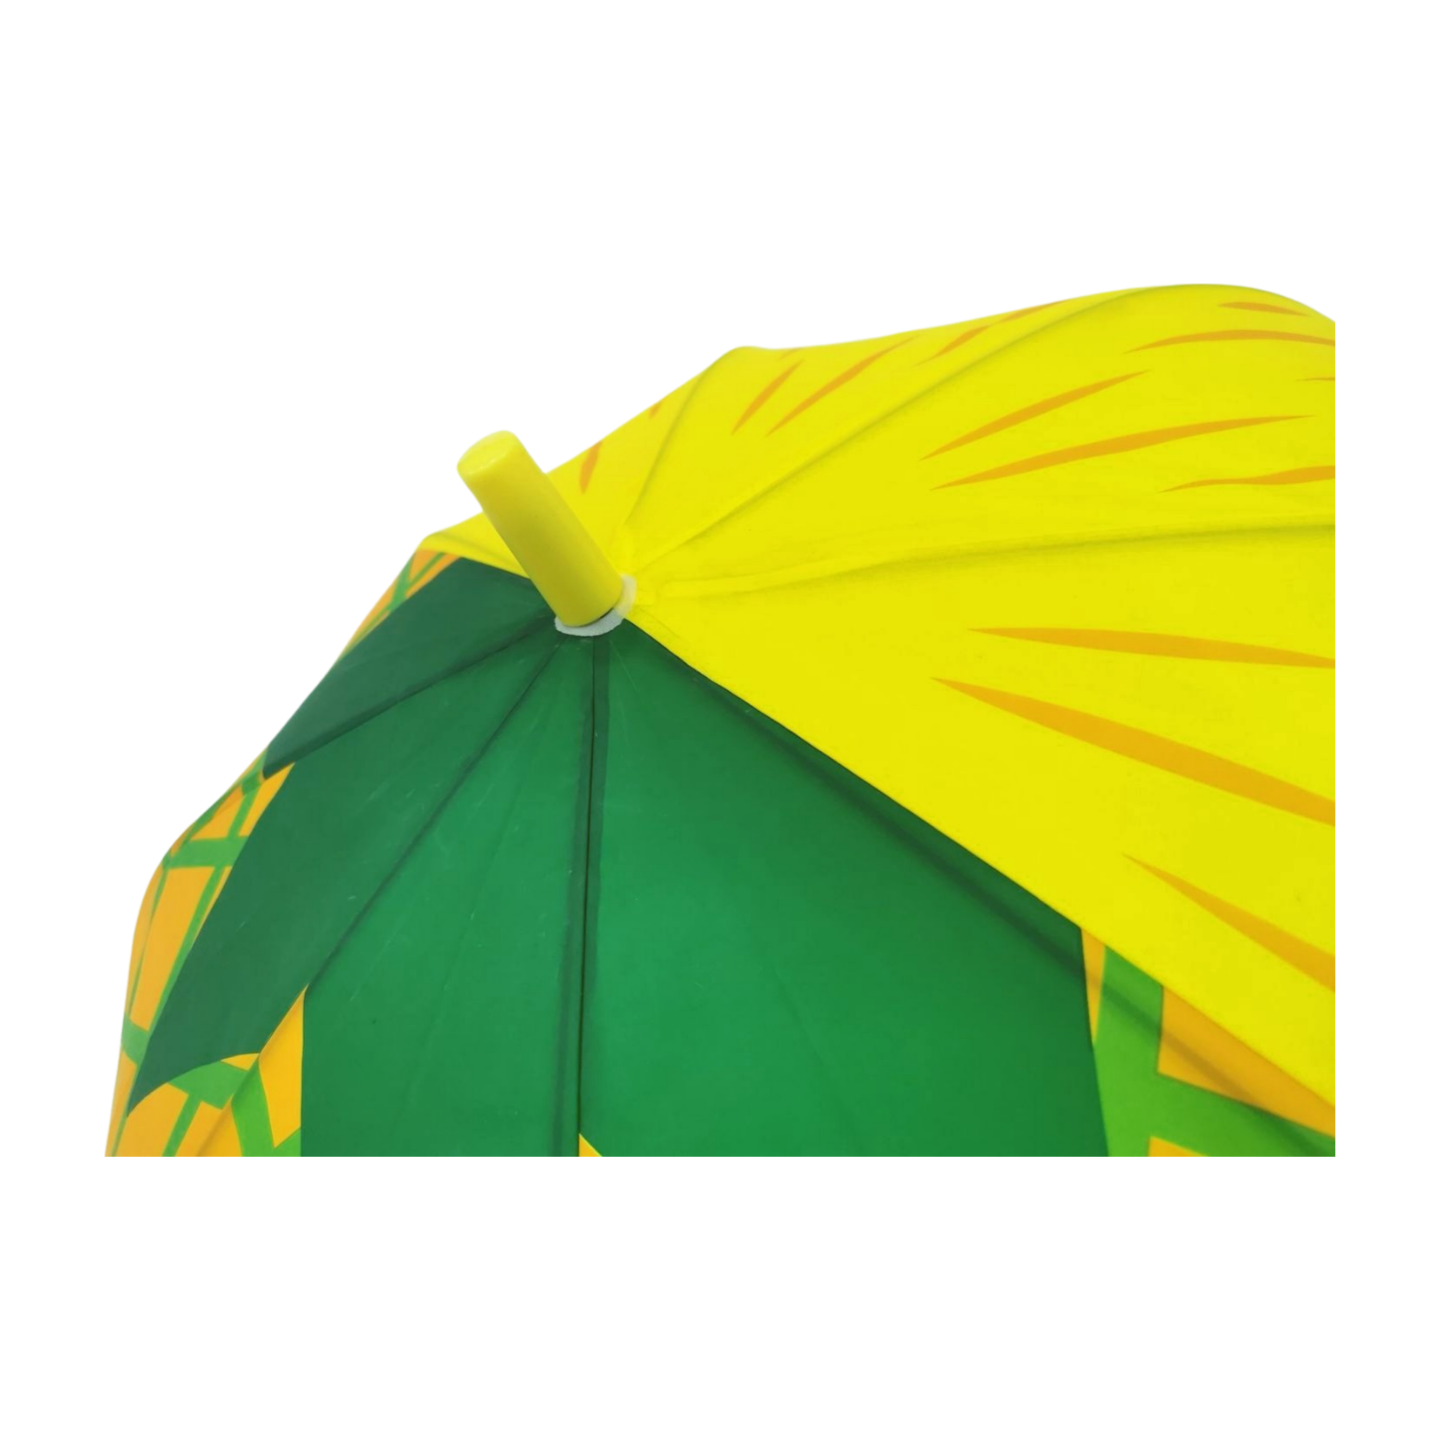 https://www.hodaumbrella.com/plastic-transp…ldren-umbrella-product/